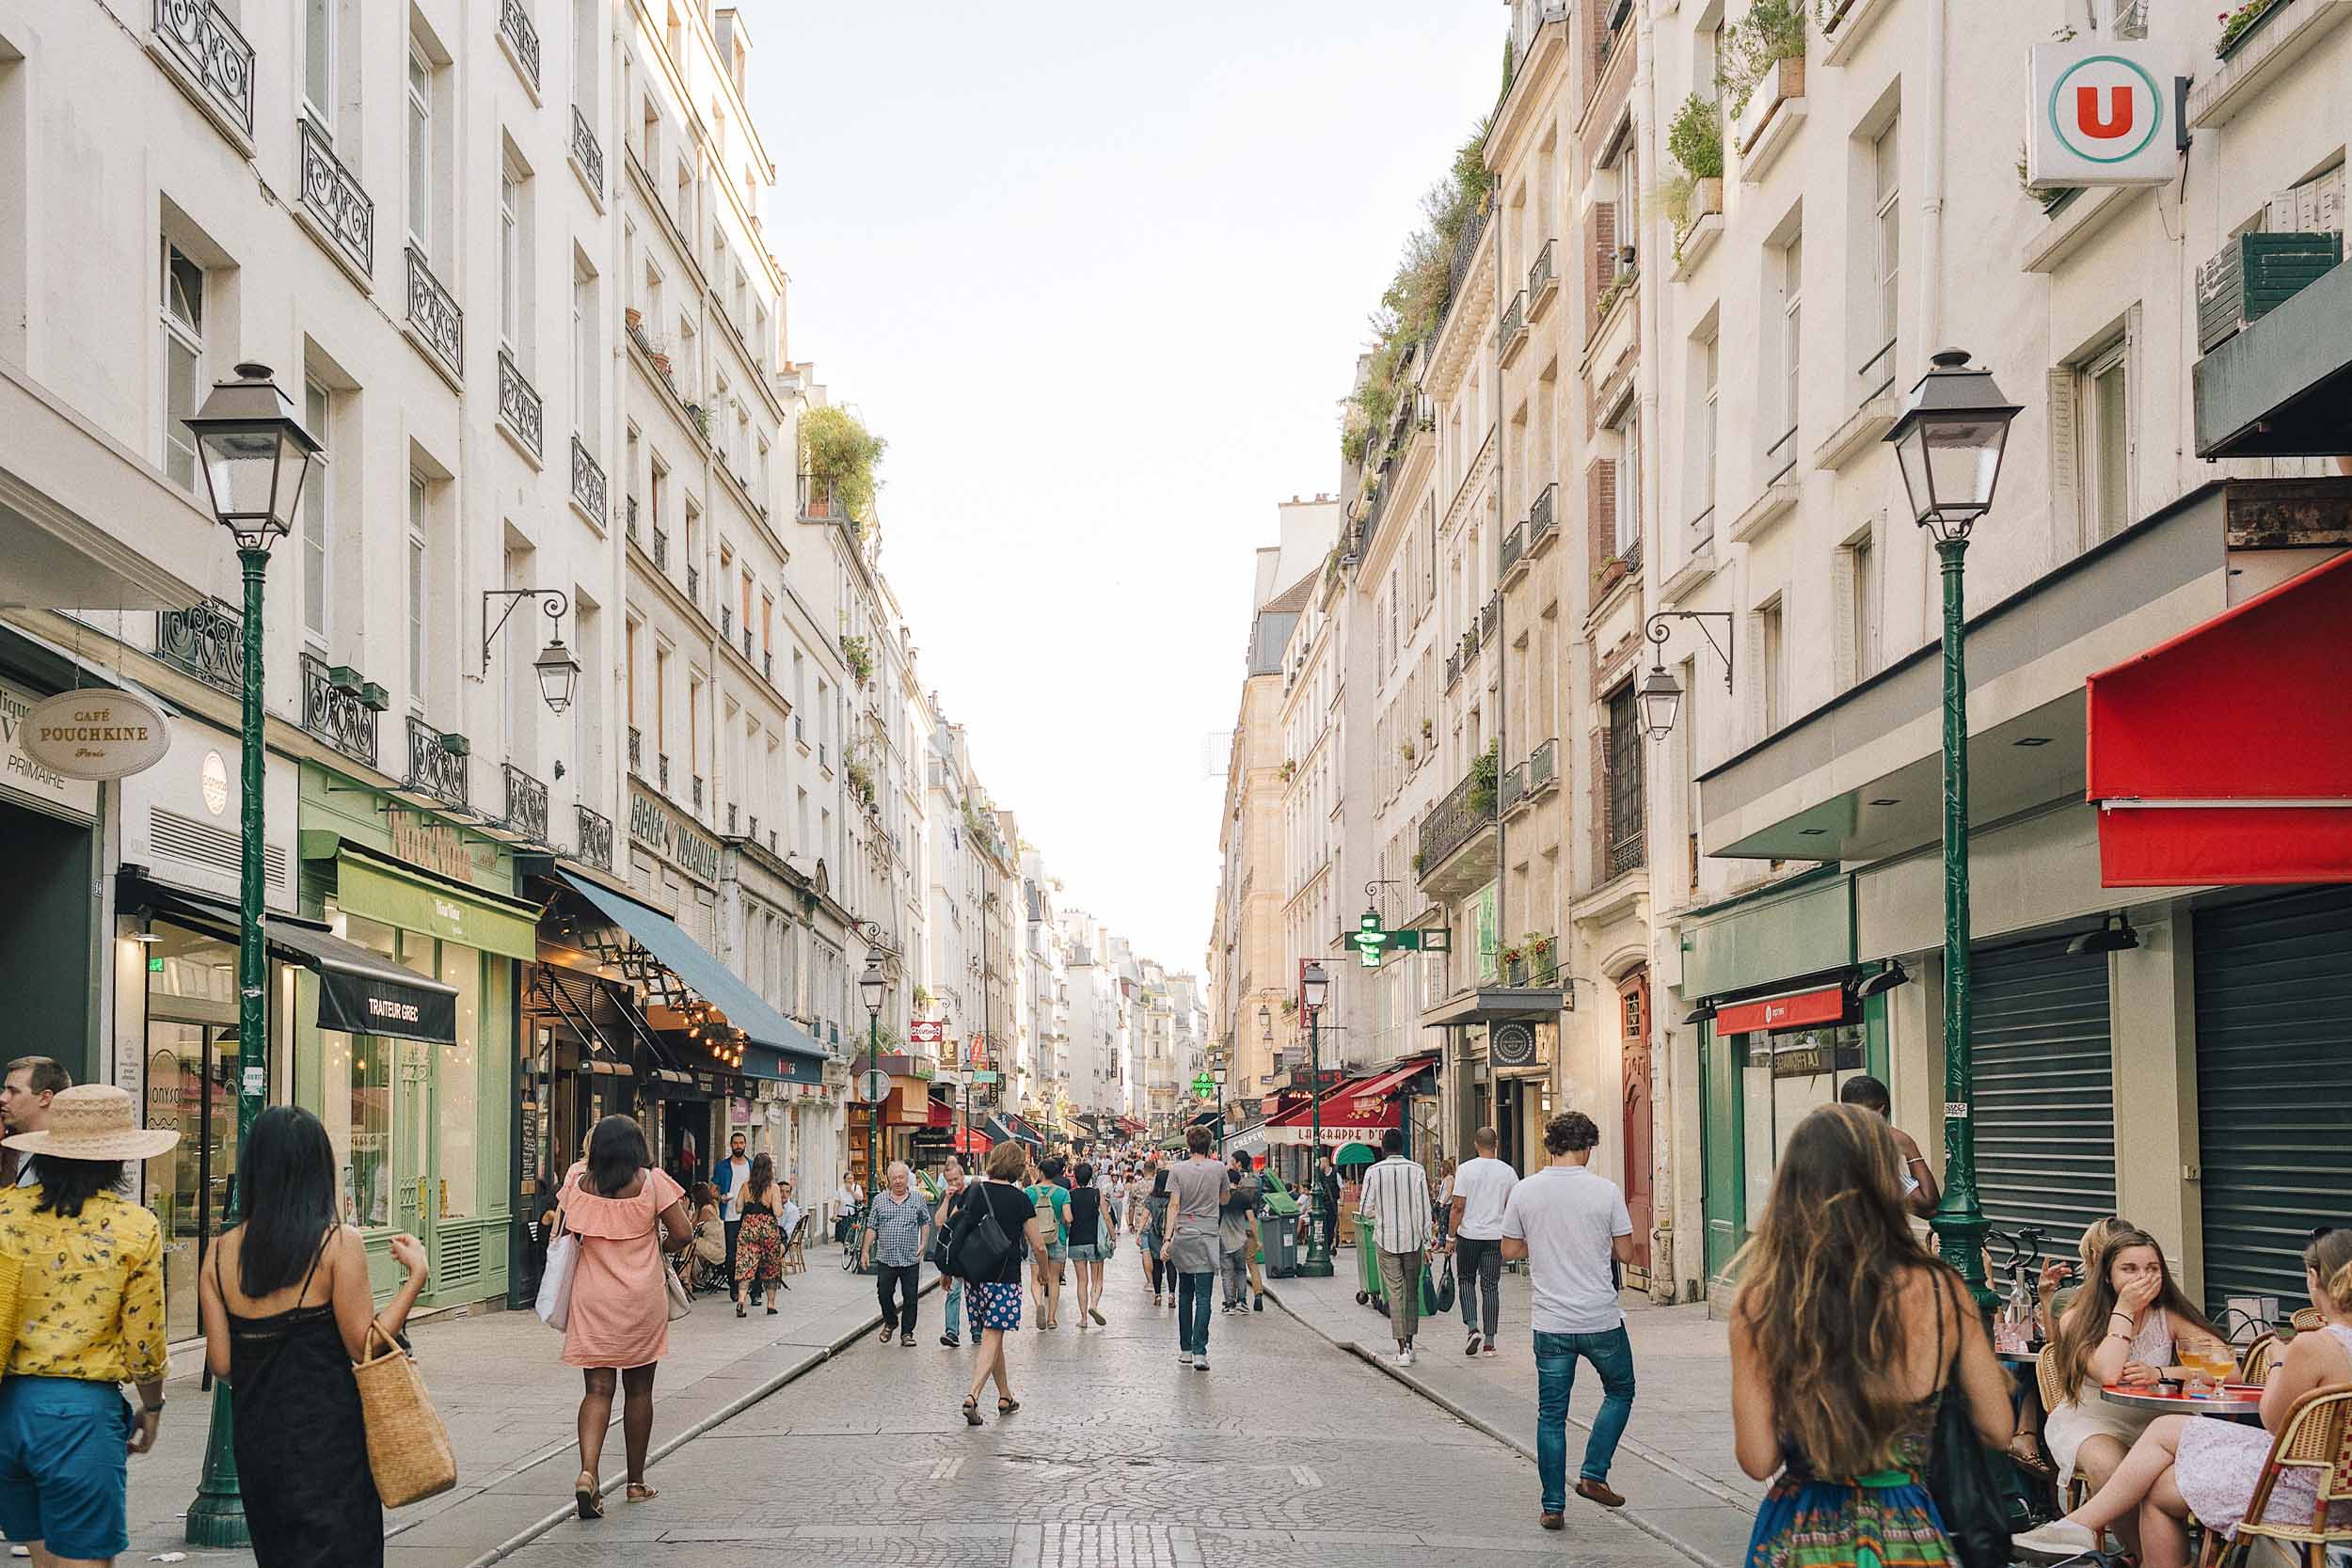 Rue Montorgeuil in Paris, a market street worth walking around